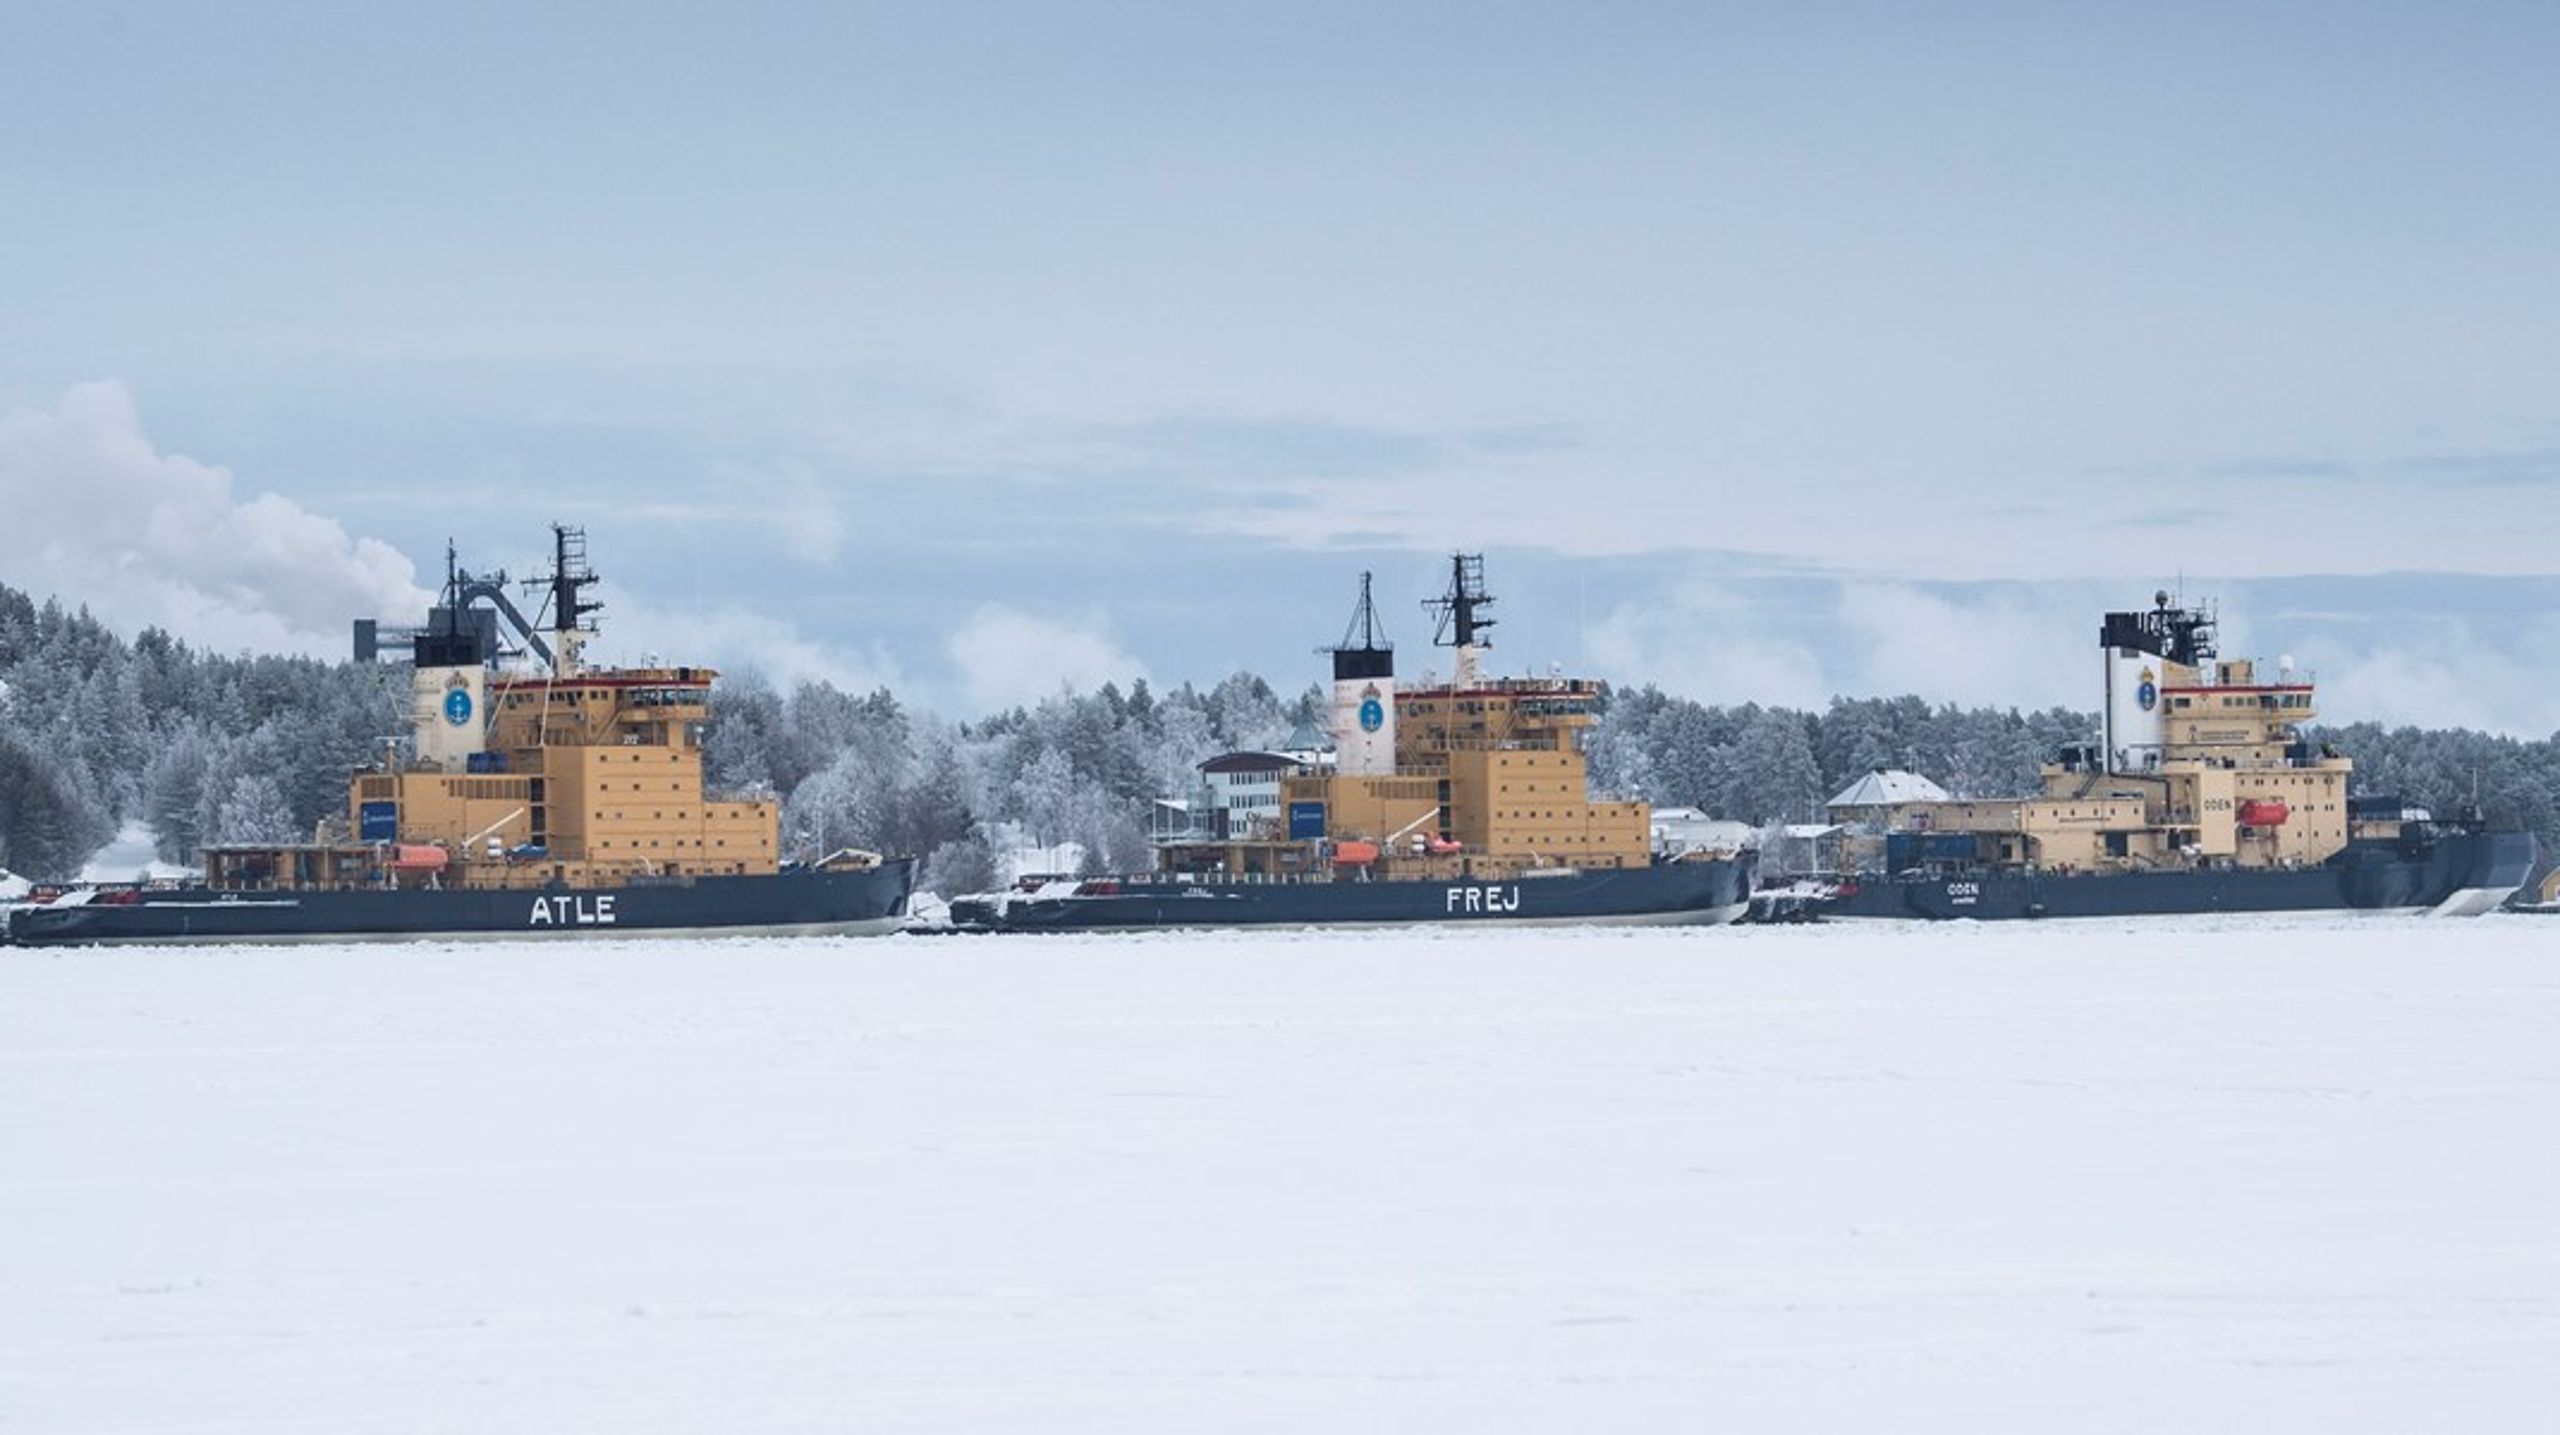 Sjöfartsverkets isbrytare Atle, Frej och Oden vid kaj i hamnen i Luleå.